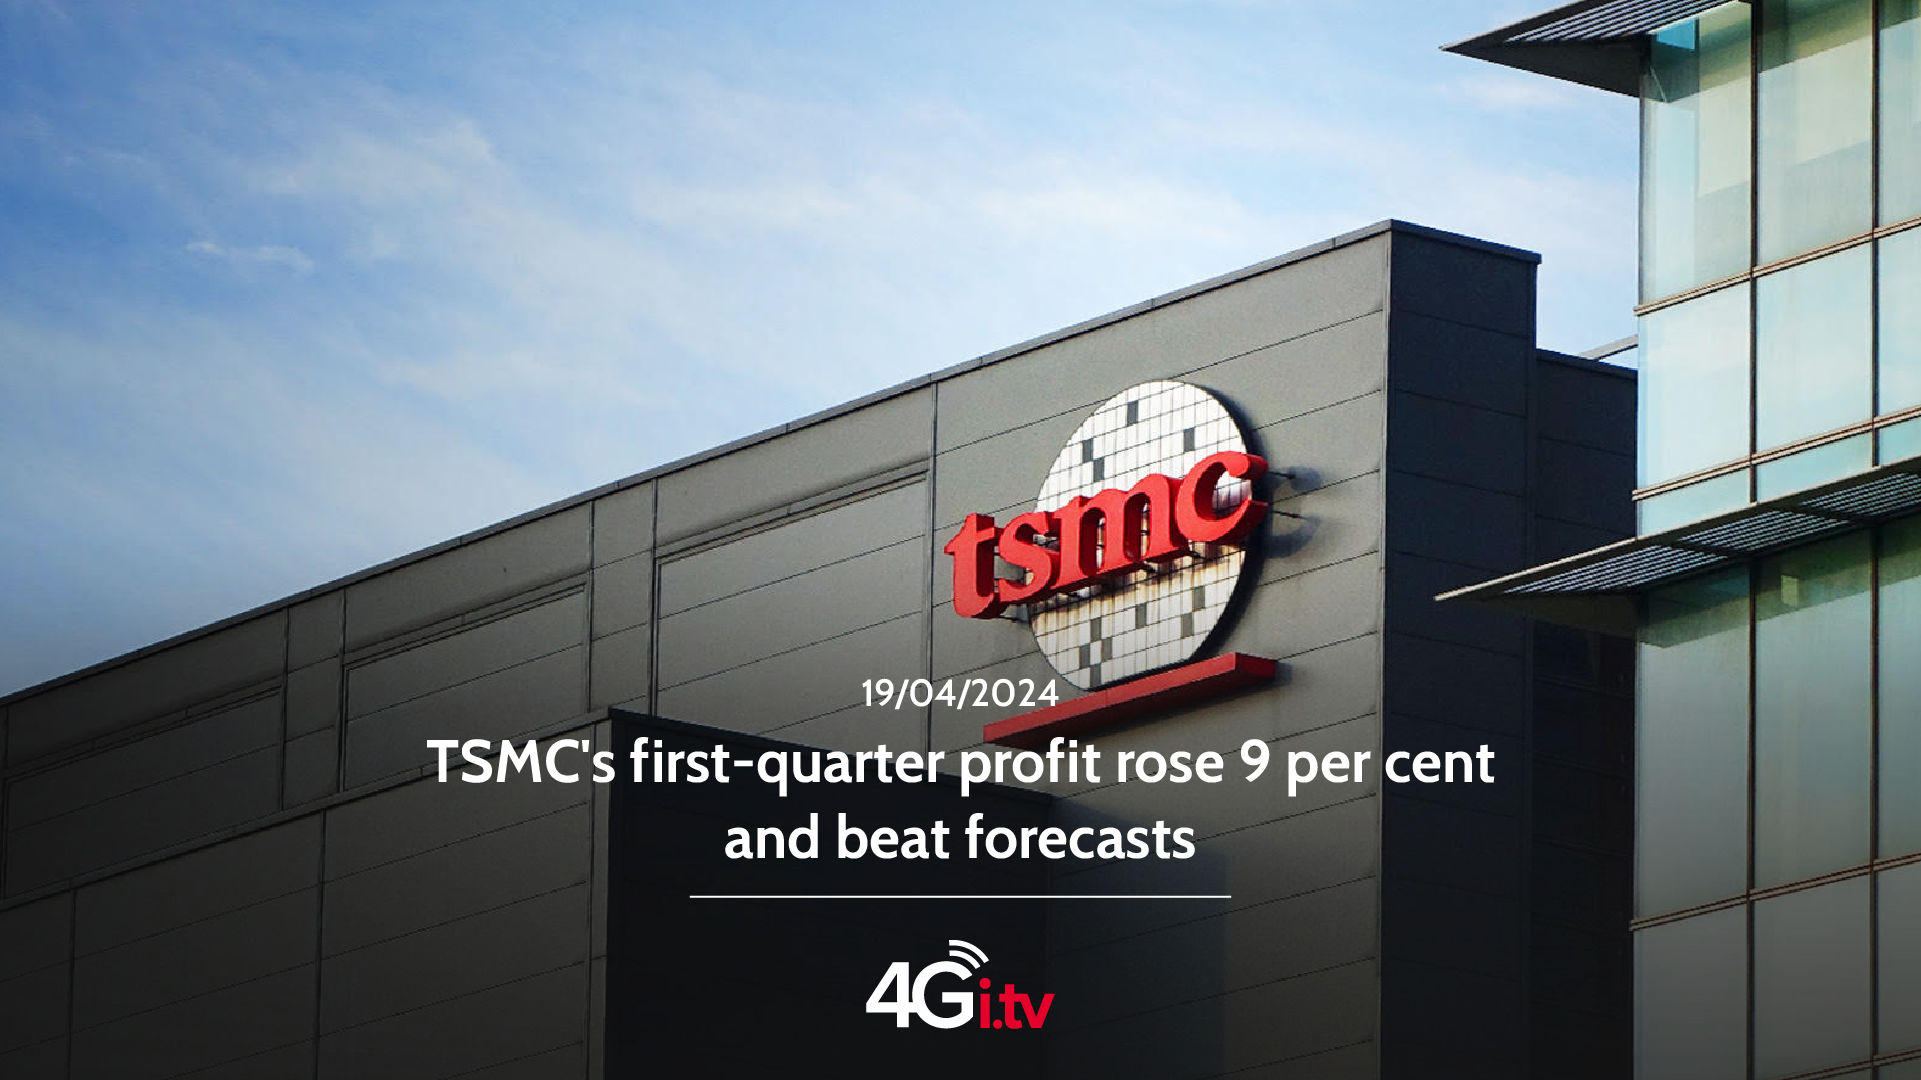 Подробнее о статье TSMC’s first-quarter profit rose 9 per cent and beat forecasts